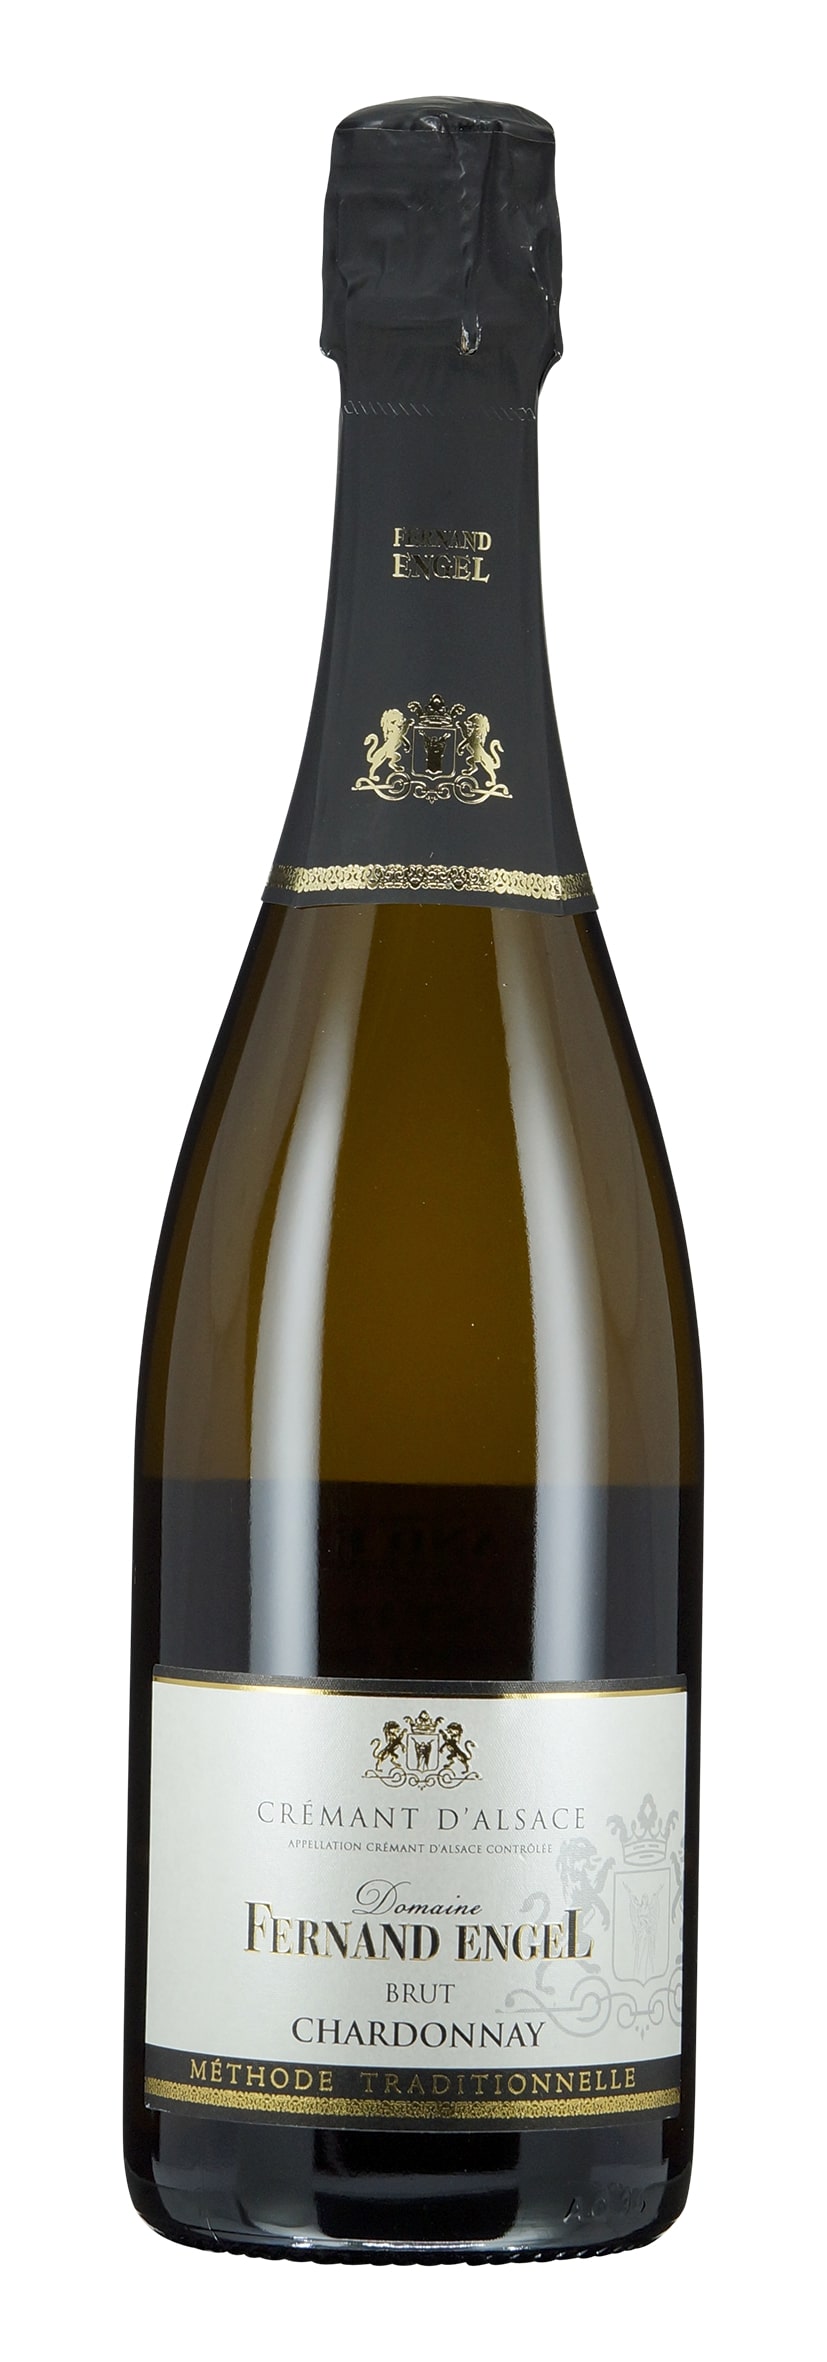 Crémant d'Alsace AOC Chardonnay 2020